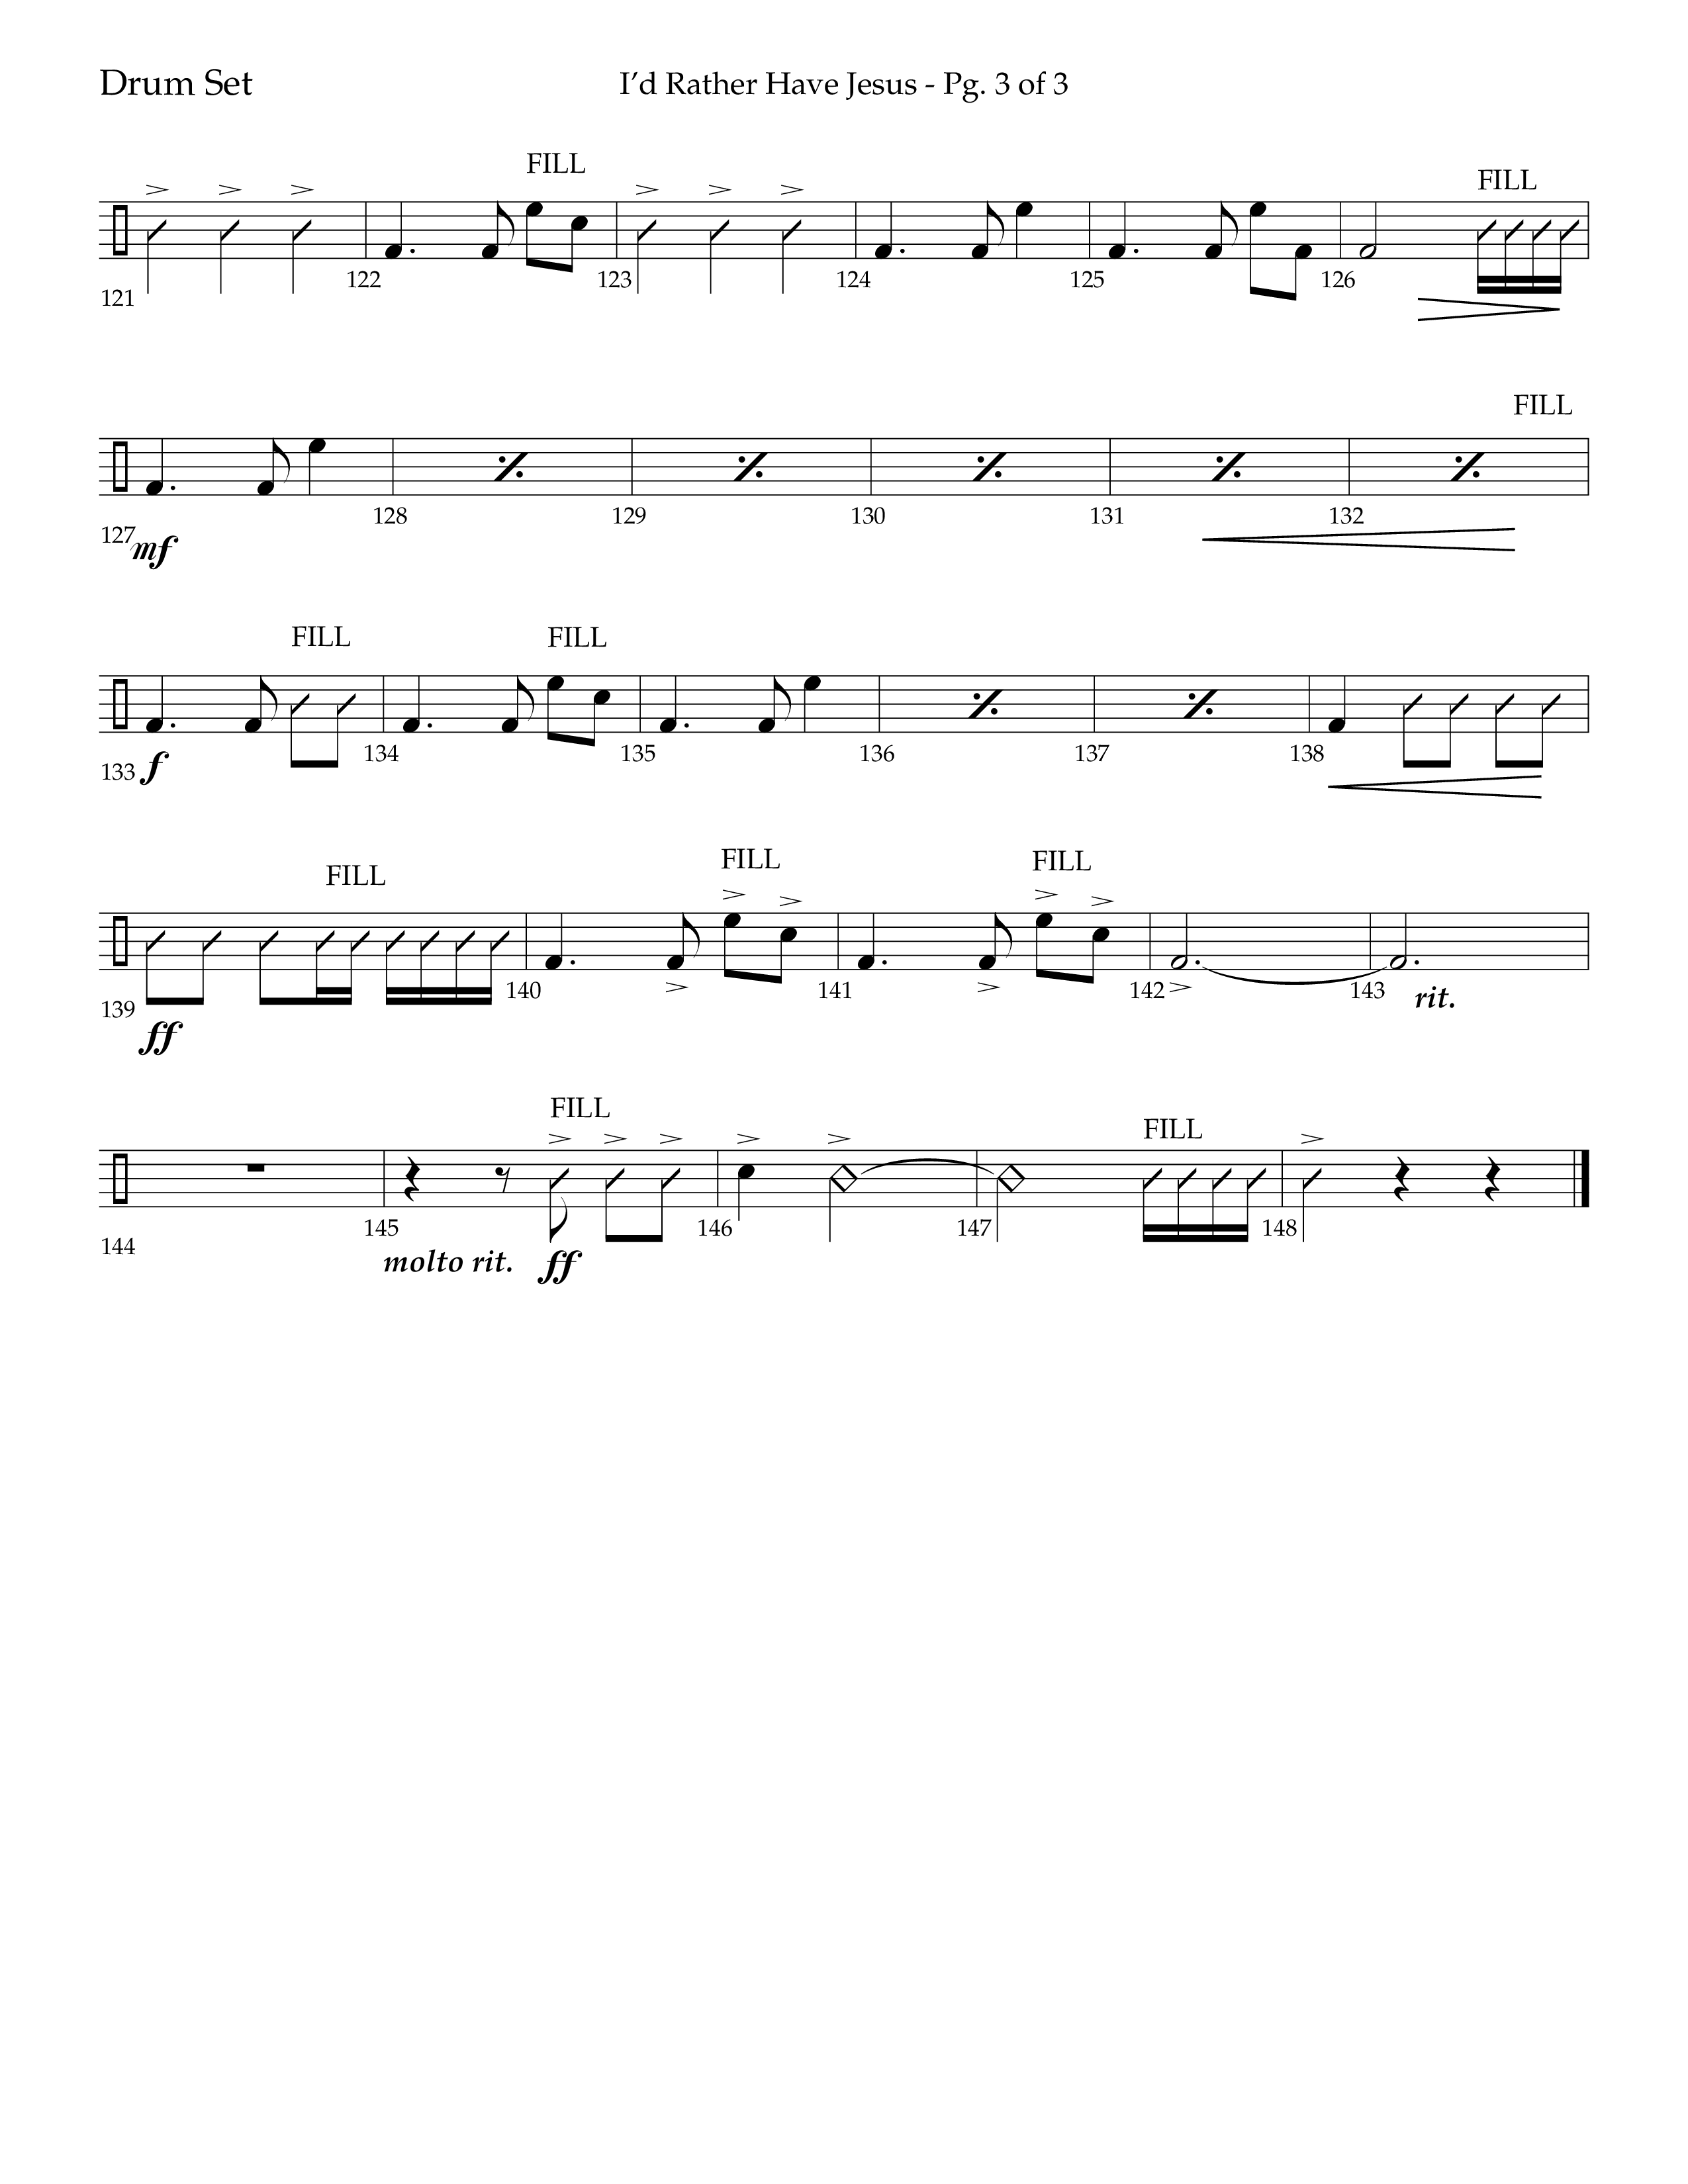 I'd Rather Have Jesus (Choral Anthem SATB) Drum Set (Lifeway Choral / Arr. Richard Kingsmore)